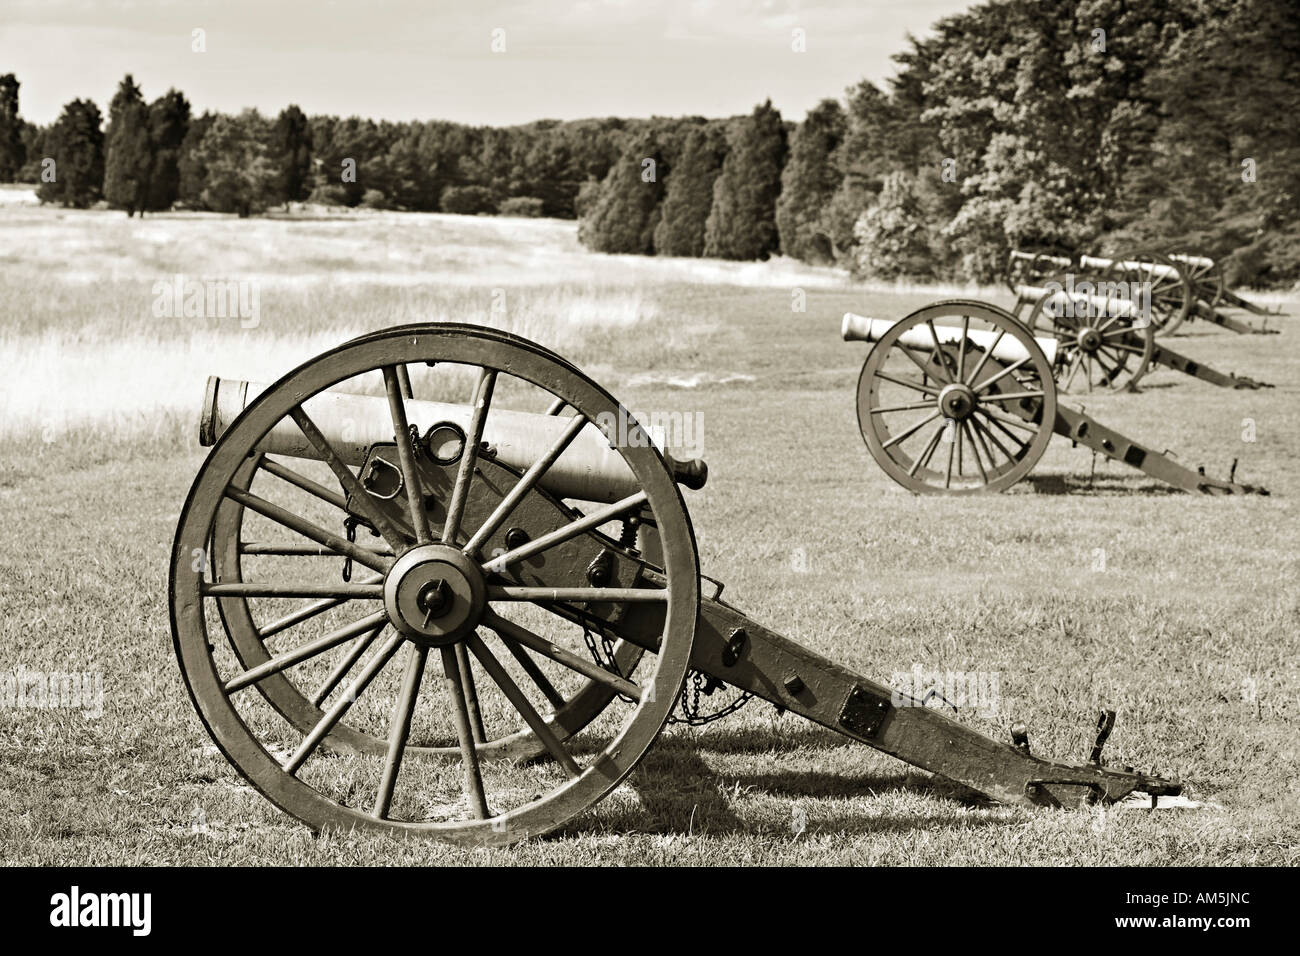 Guerre civile américaine Manassas National Battlefield Park. Batterie de canons en bronze Napoléon et de perroquets d'armes à feu. Banque D'Images